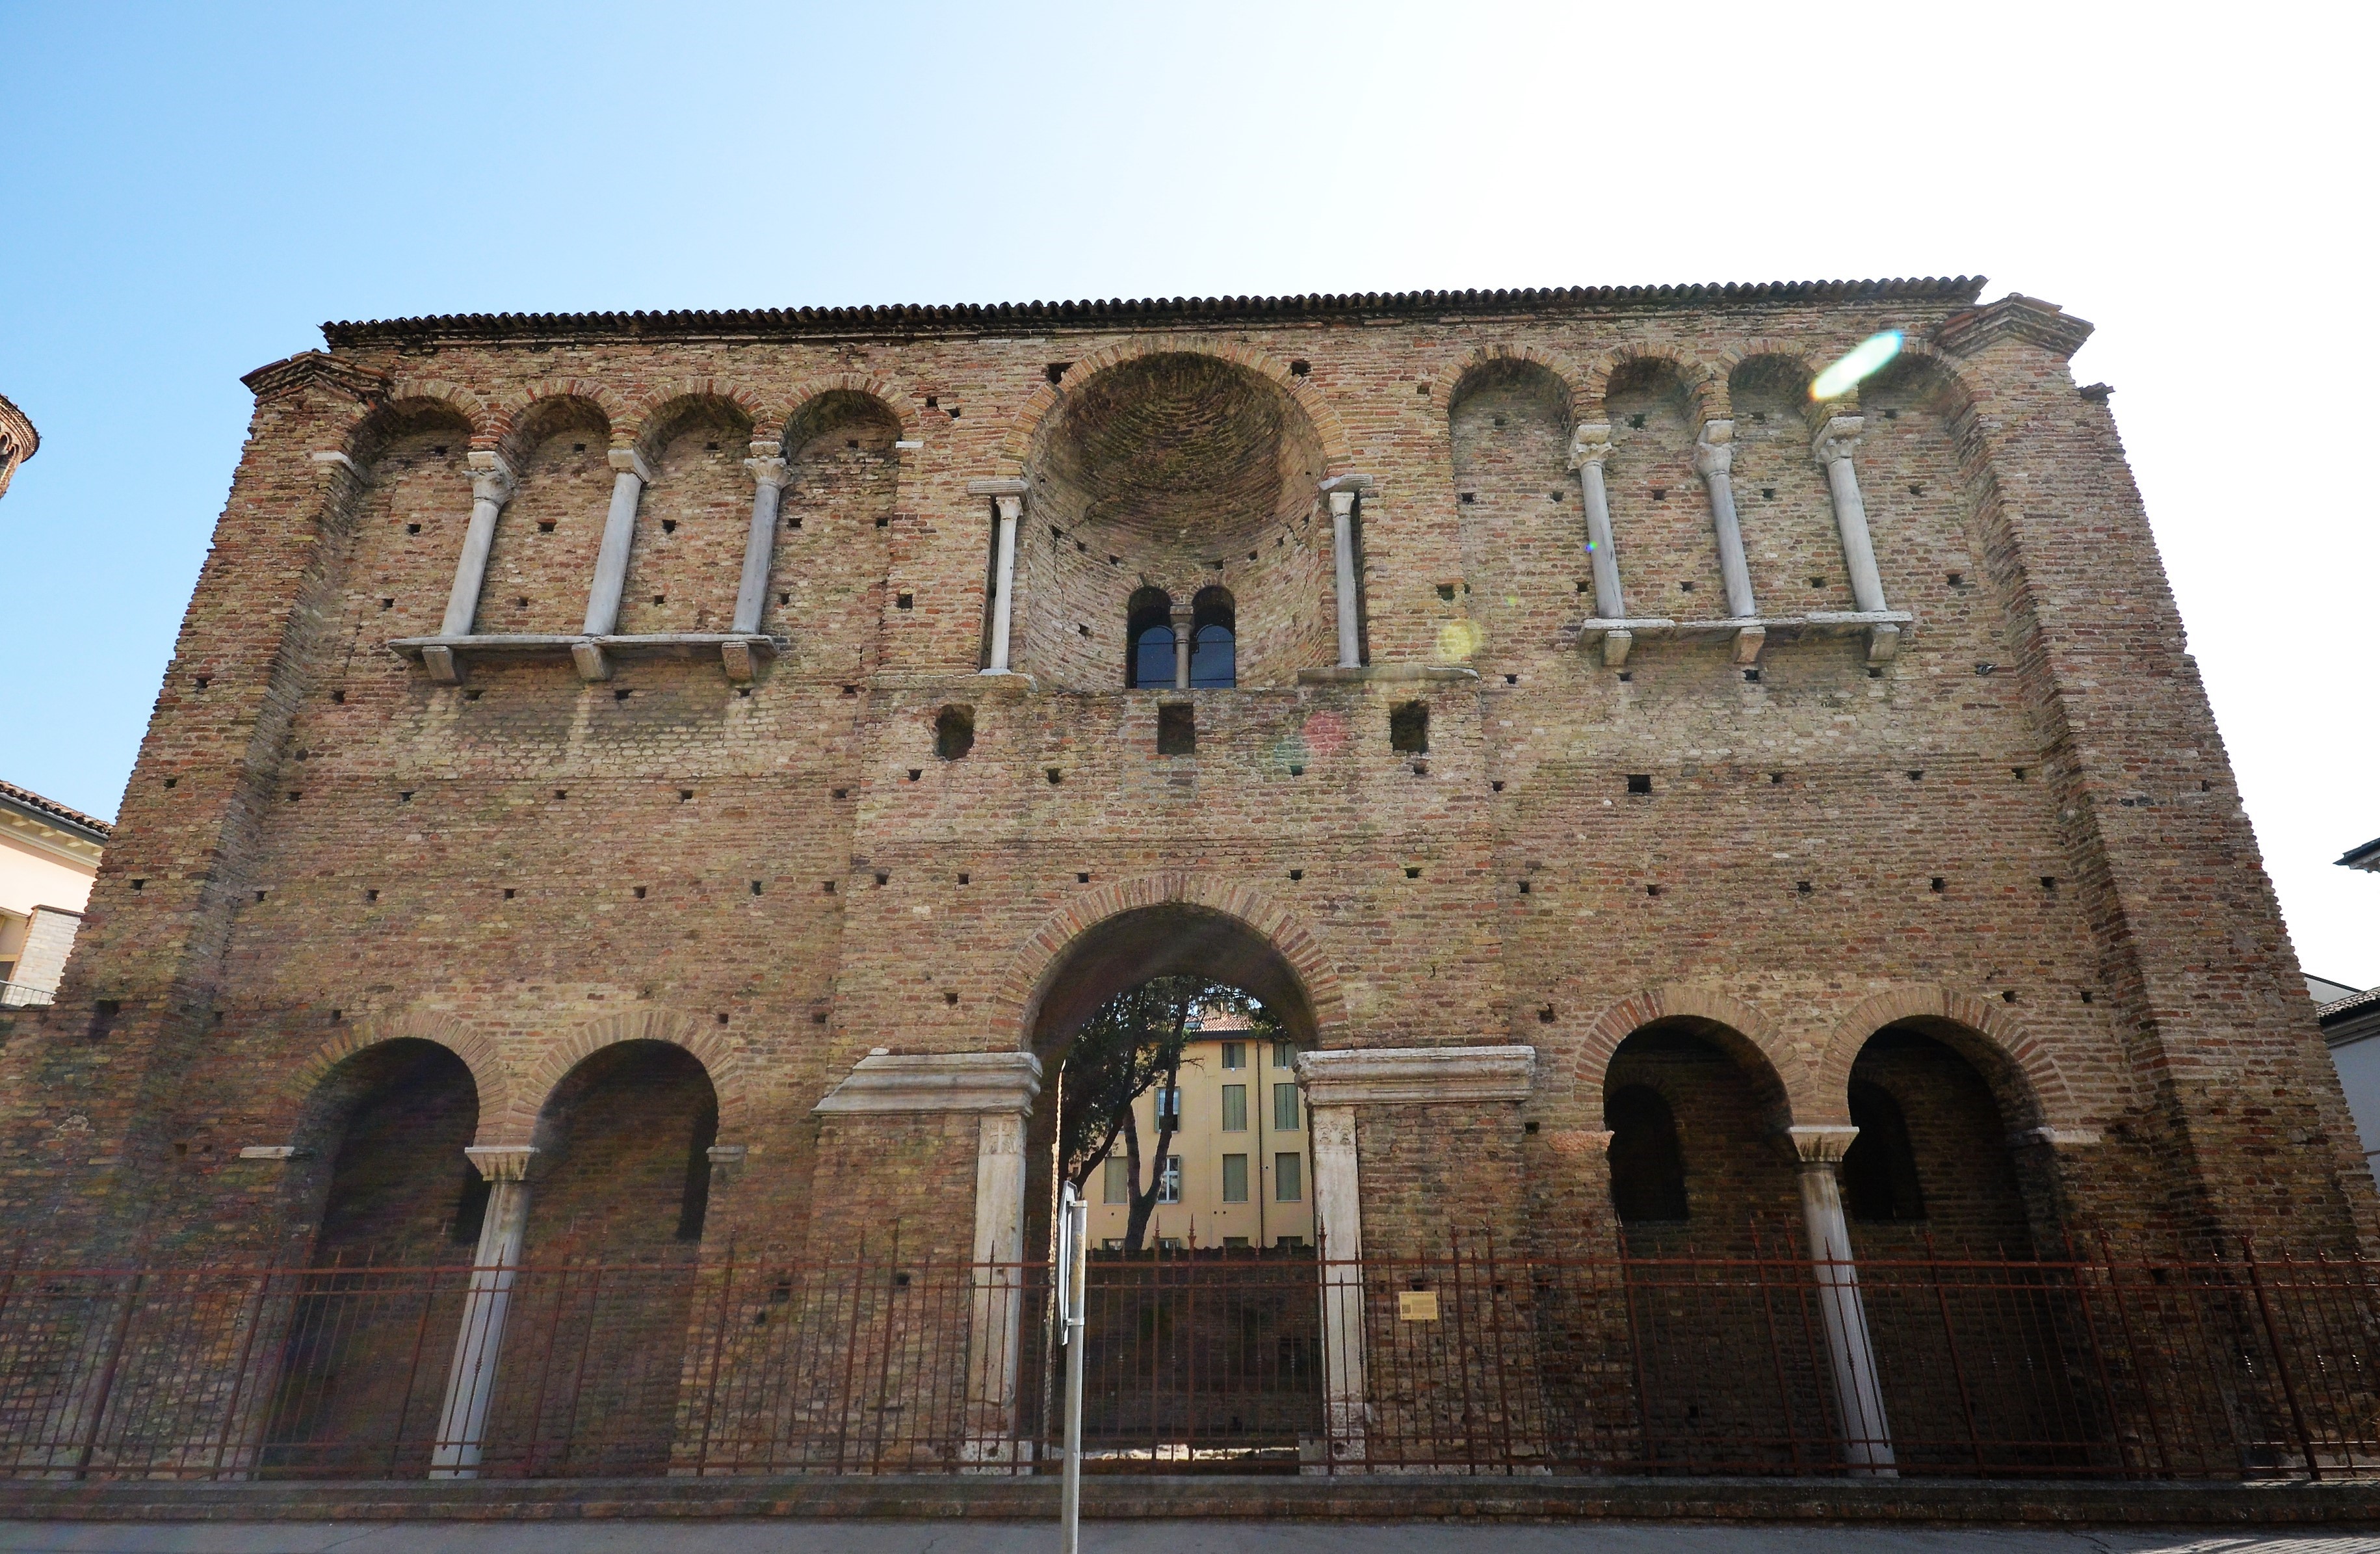 foto: https://upload.wikimedia.org/wikipedia/commons/c/c7/Palazzo_di_Teodorico-facciata.jpg